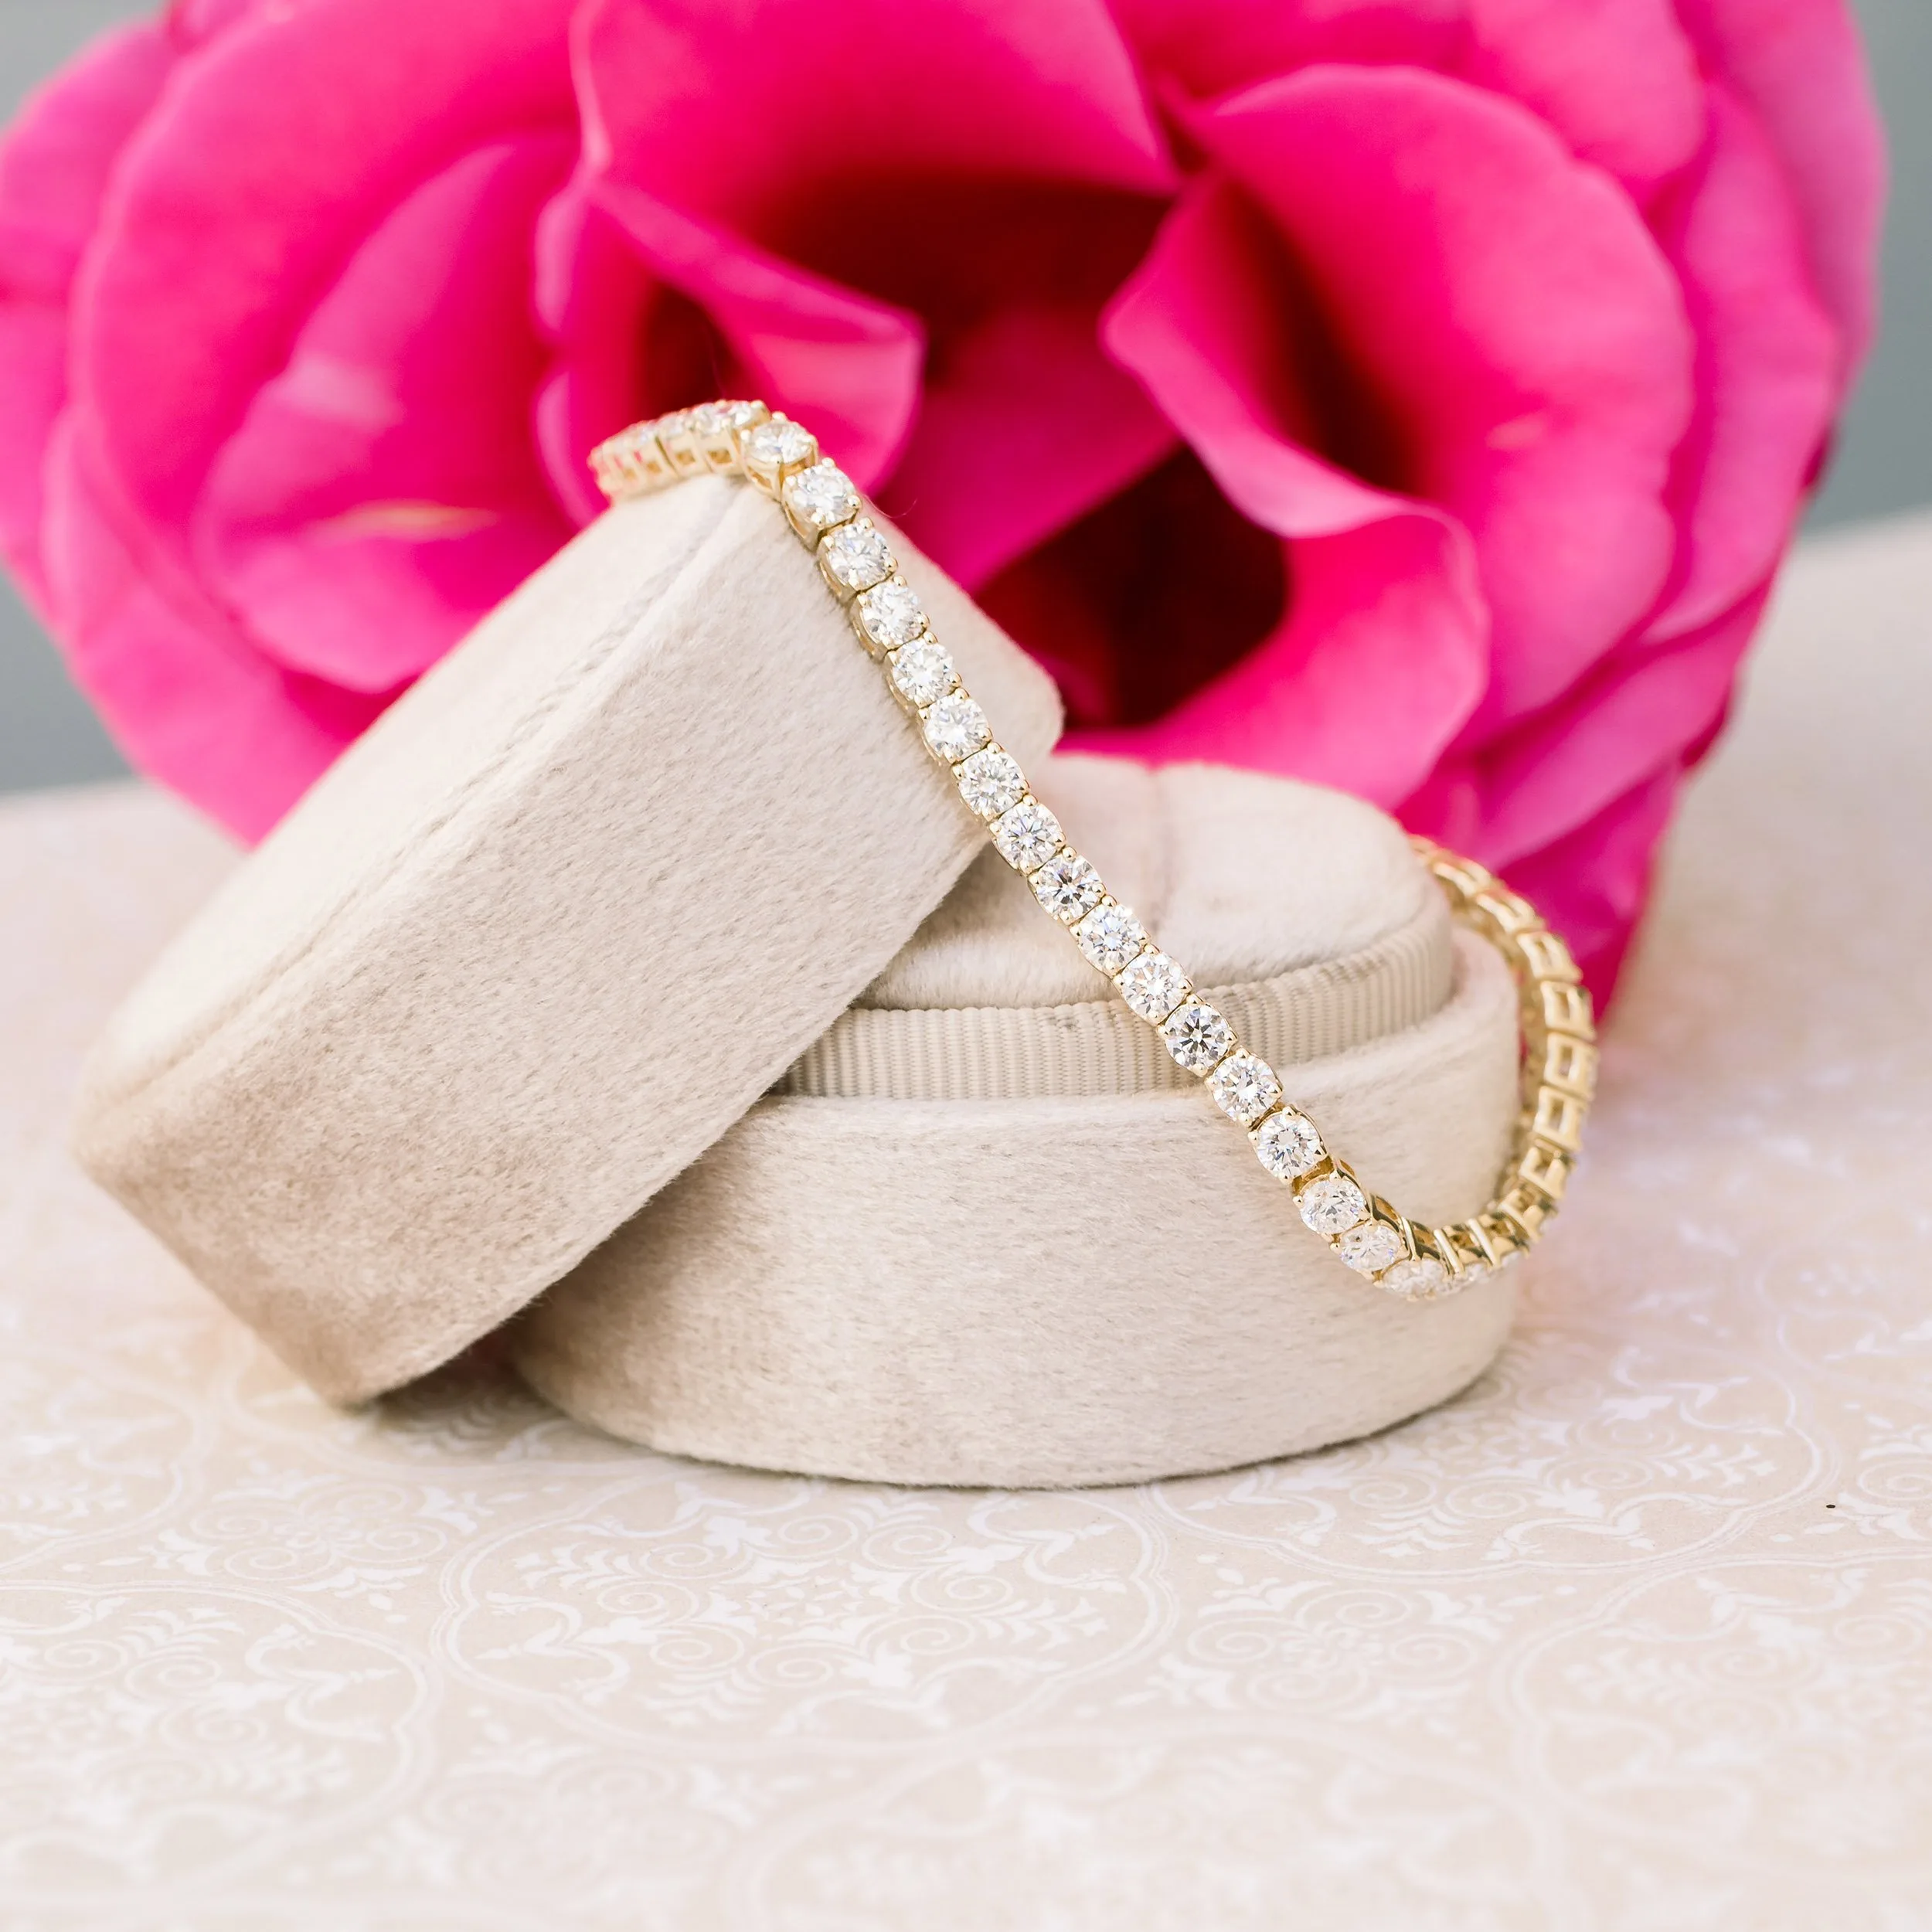 Single Line Pear Shape Diamond Tennis Bracelet - Jaipur Jewels